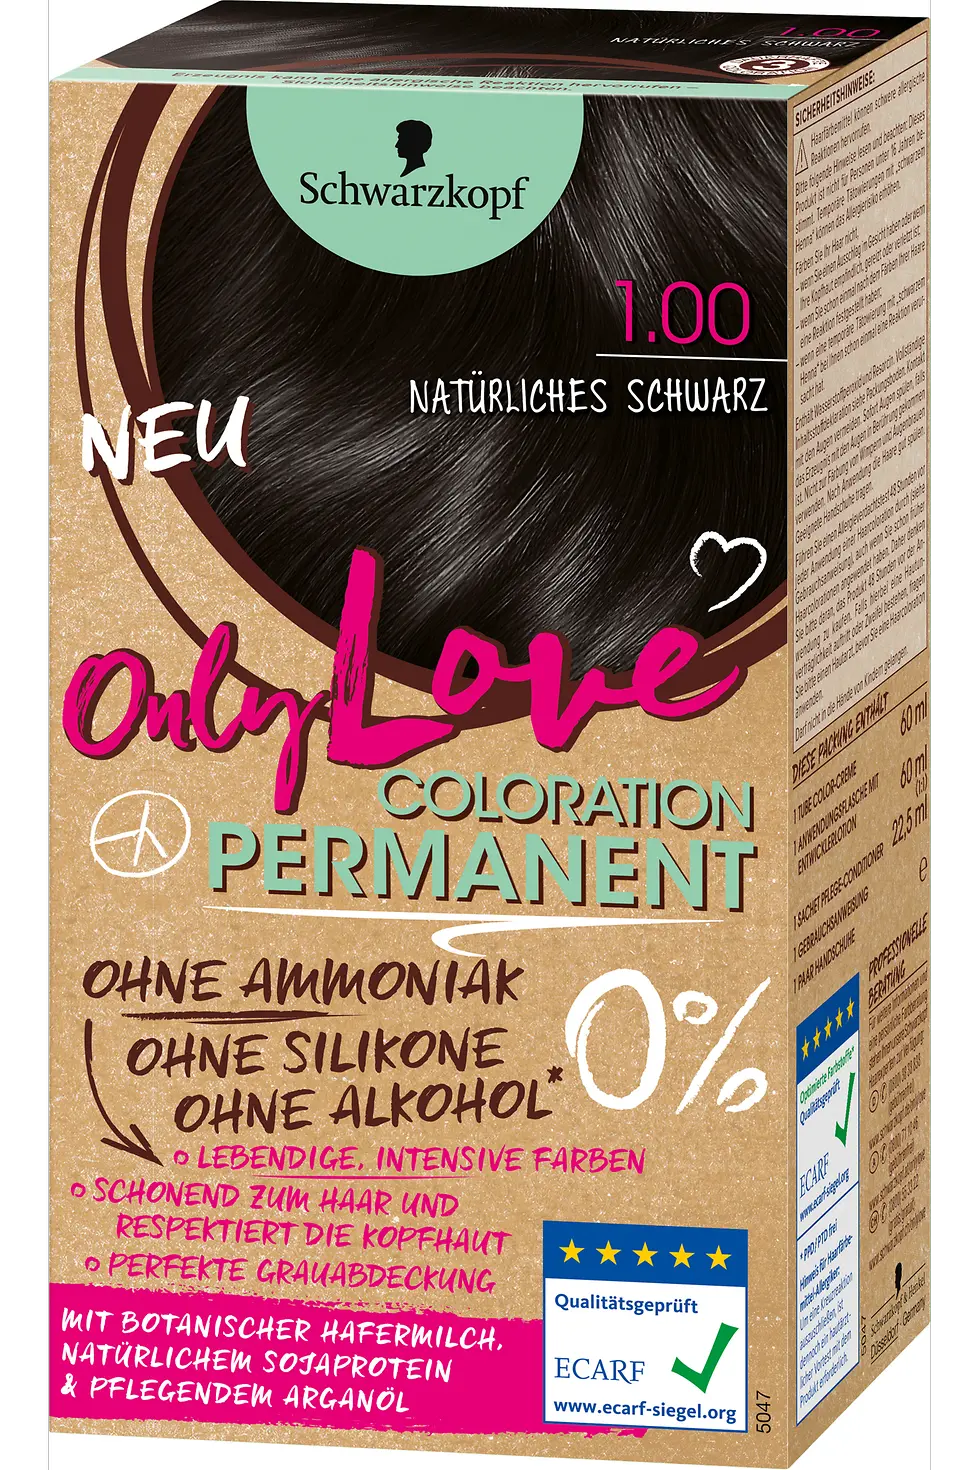 Only Love Natürliches Schwarz 1.00